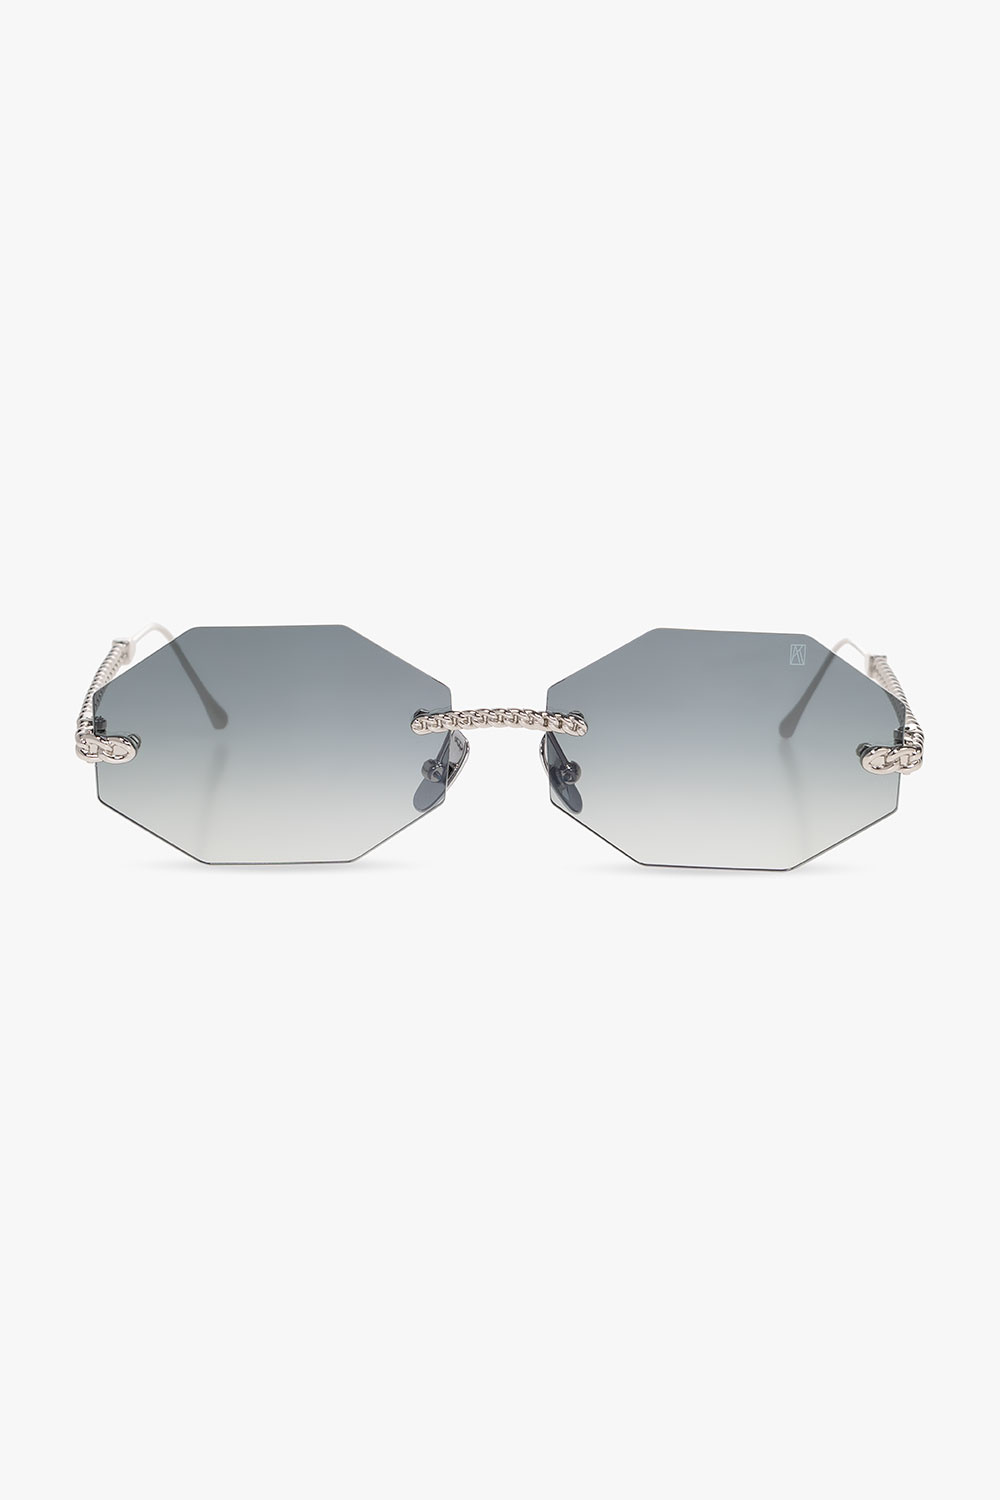 Anna Karin Karlsson ‘Chain Nest’ sunglasses